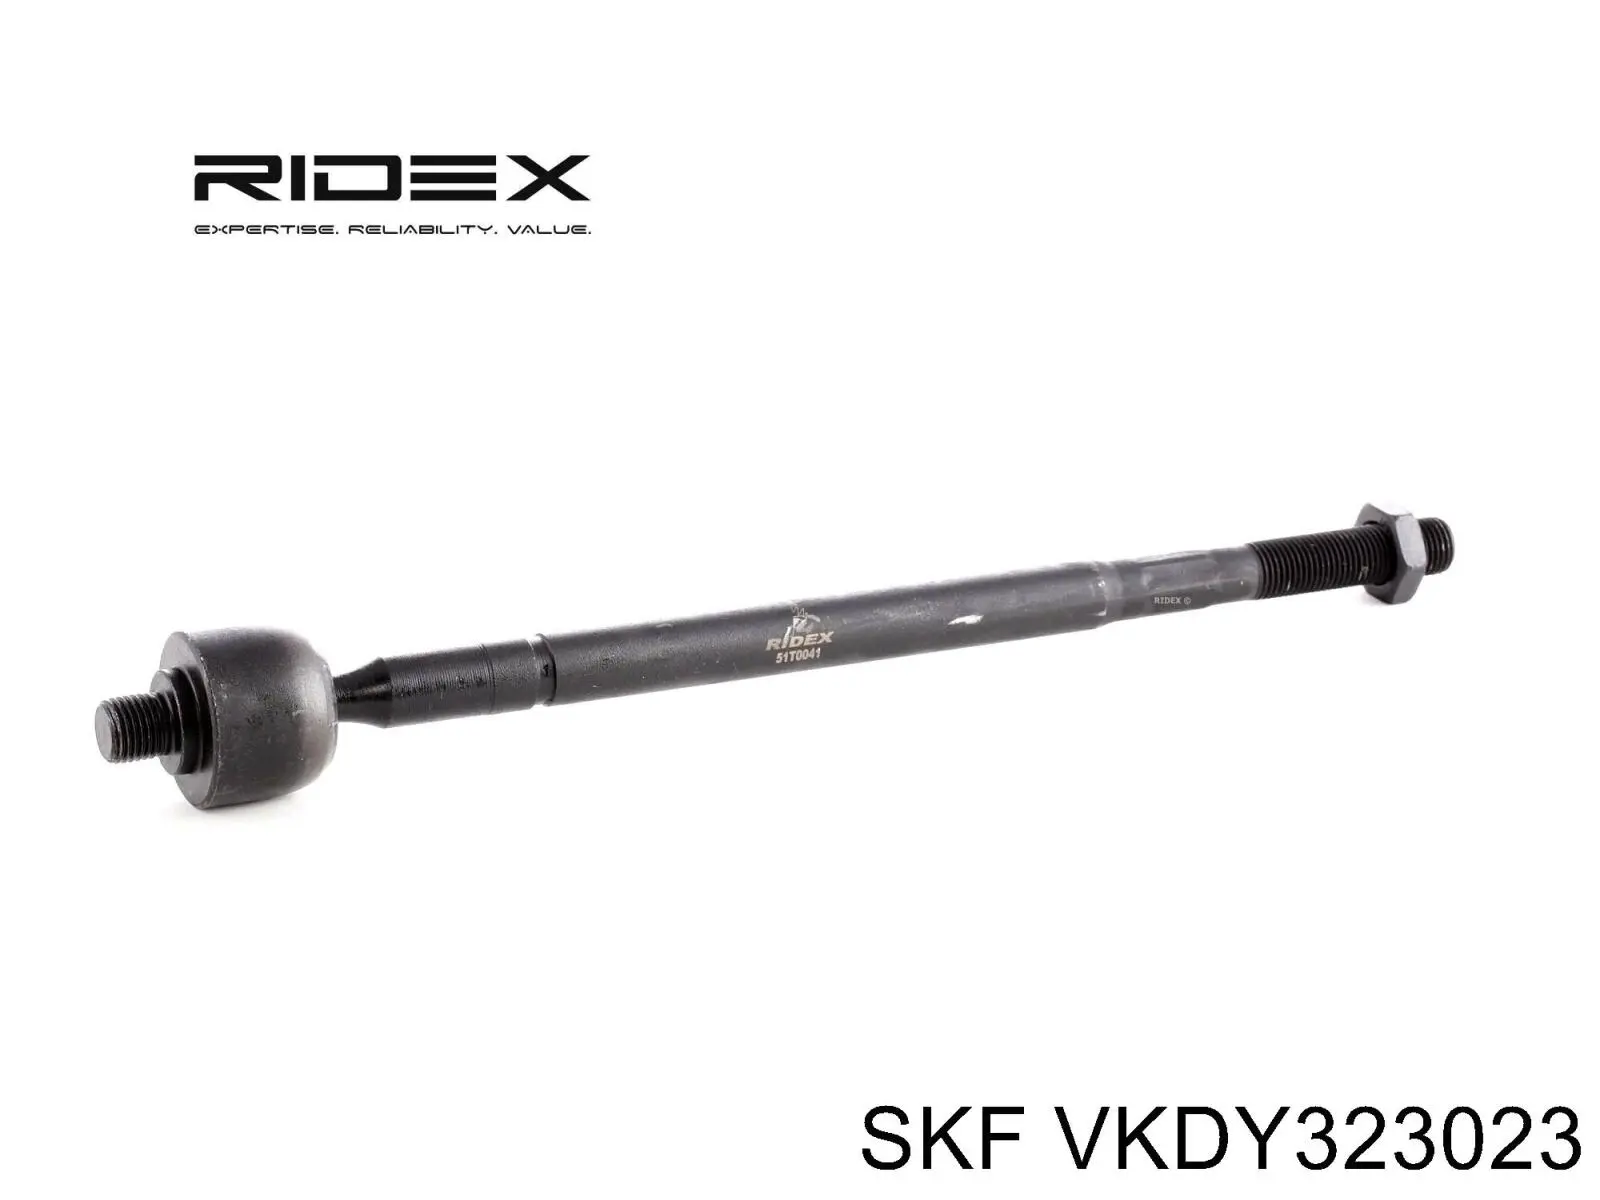 VKDY 323023 SKF barra de acoplamiento